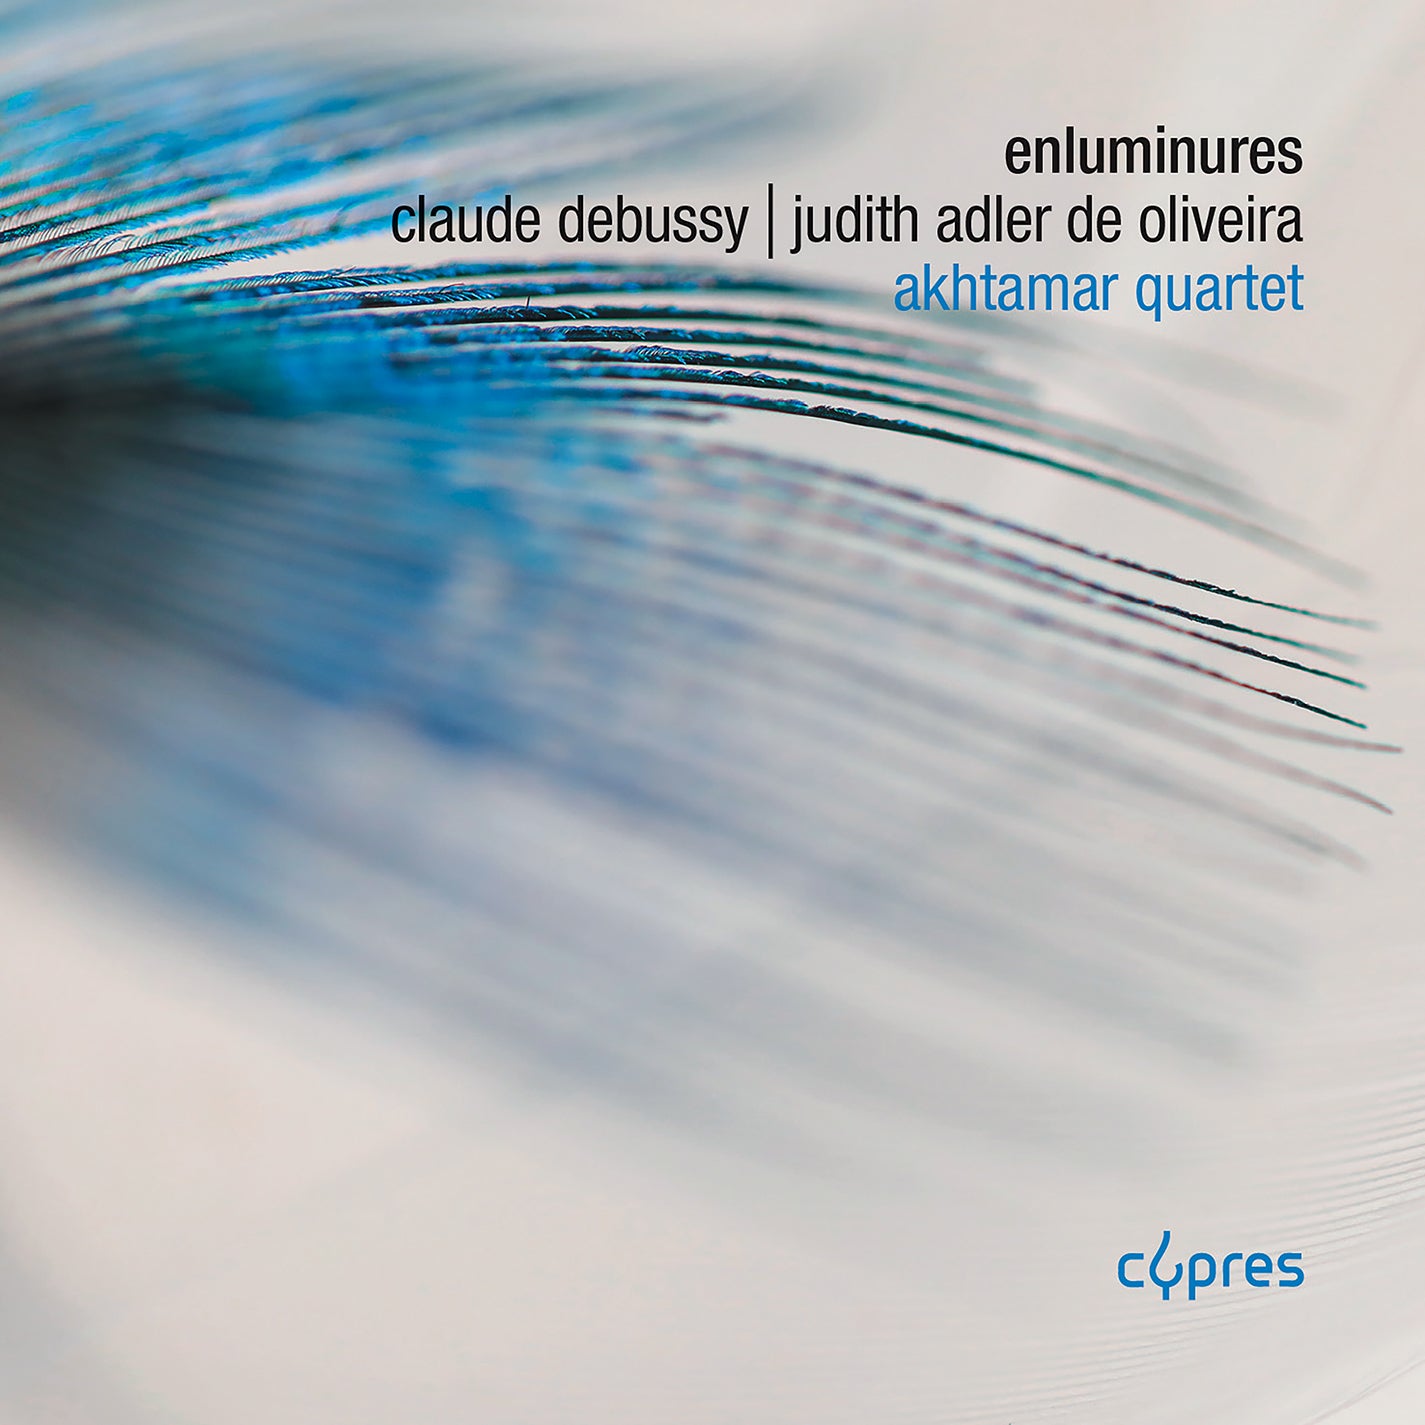 Debussy & Adler de Oliveira: Enluminures / Akhtamar Quartet